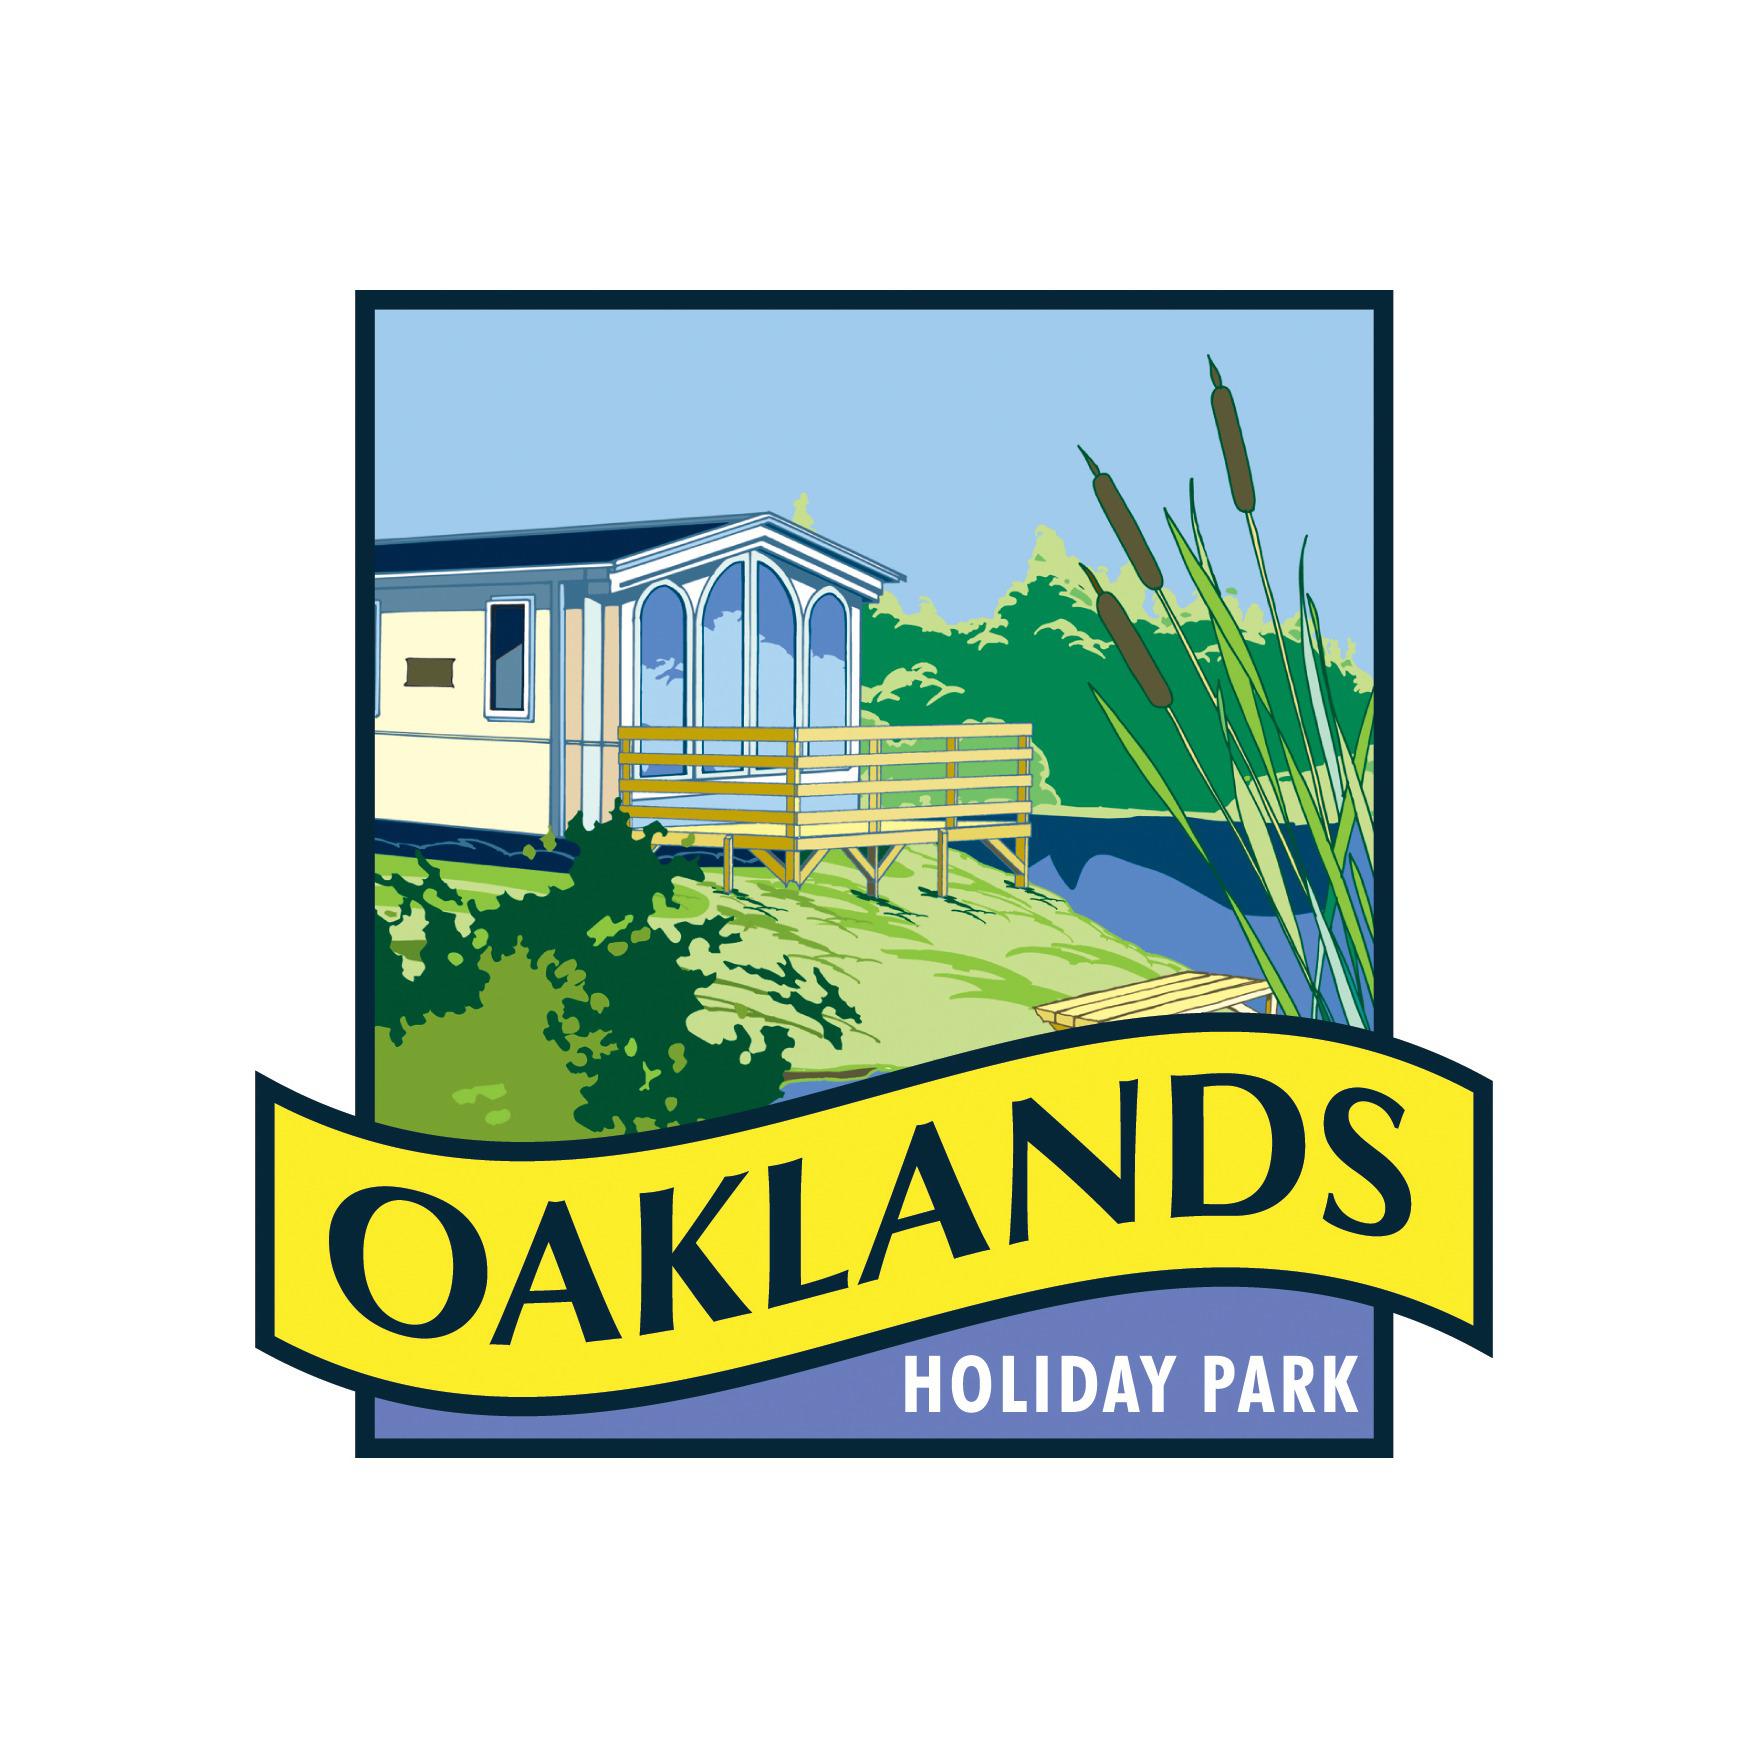 Oaklands Holiday Park - Essex, Essex CO16 8HW - 01255 440790 | ShowMeLocal.com